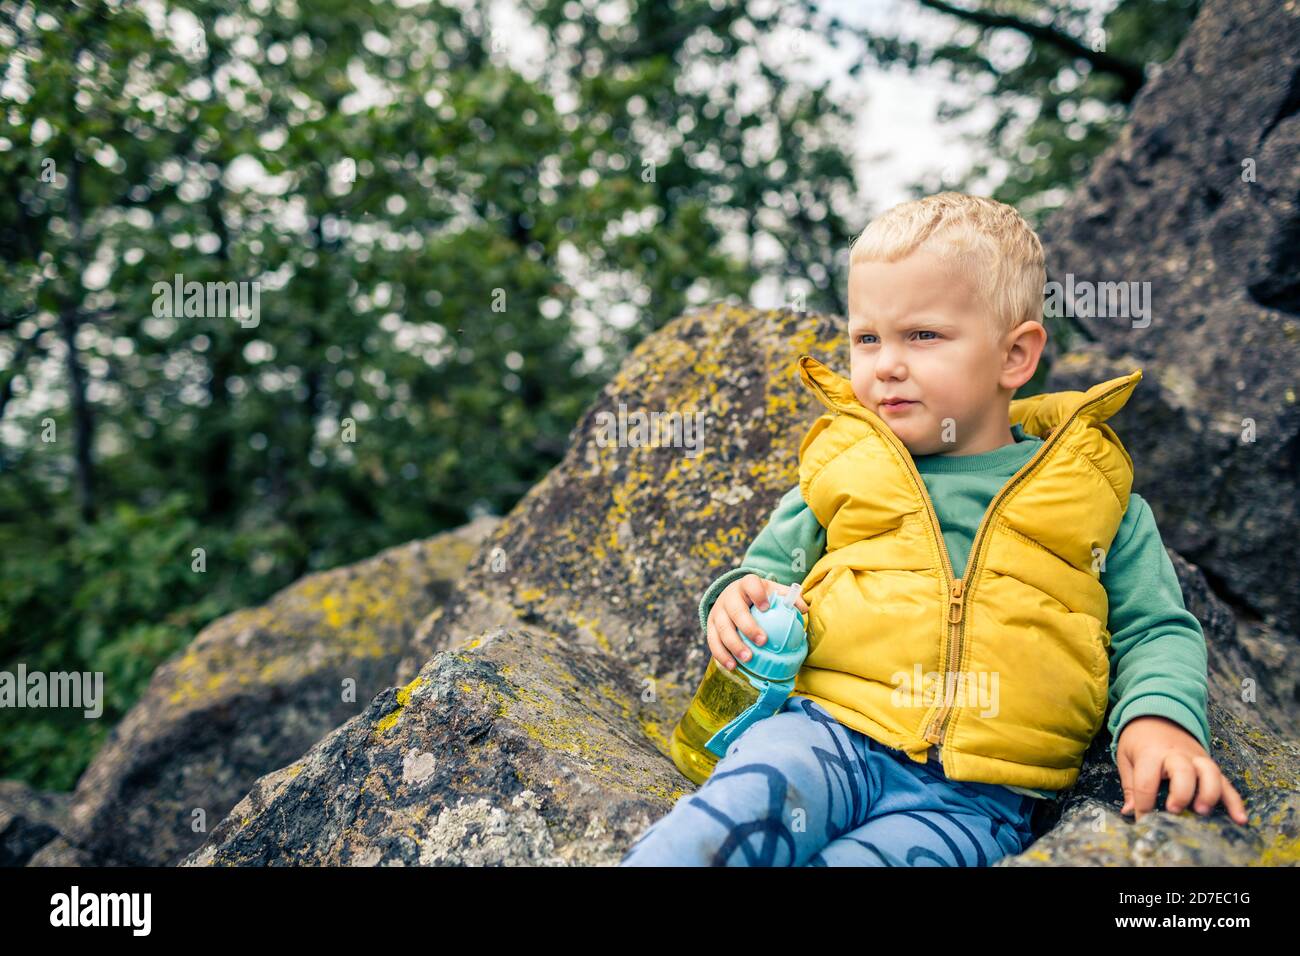 Kleiner Junge wandern in den Bergen, Familienabenteuer. Kleines Kind, das im felsigen grünen Wald spazierengeht, lächelnd. Stockfoto